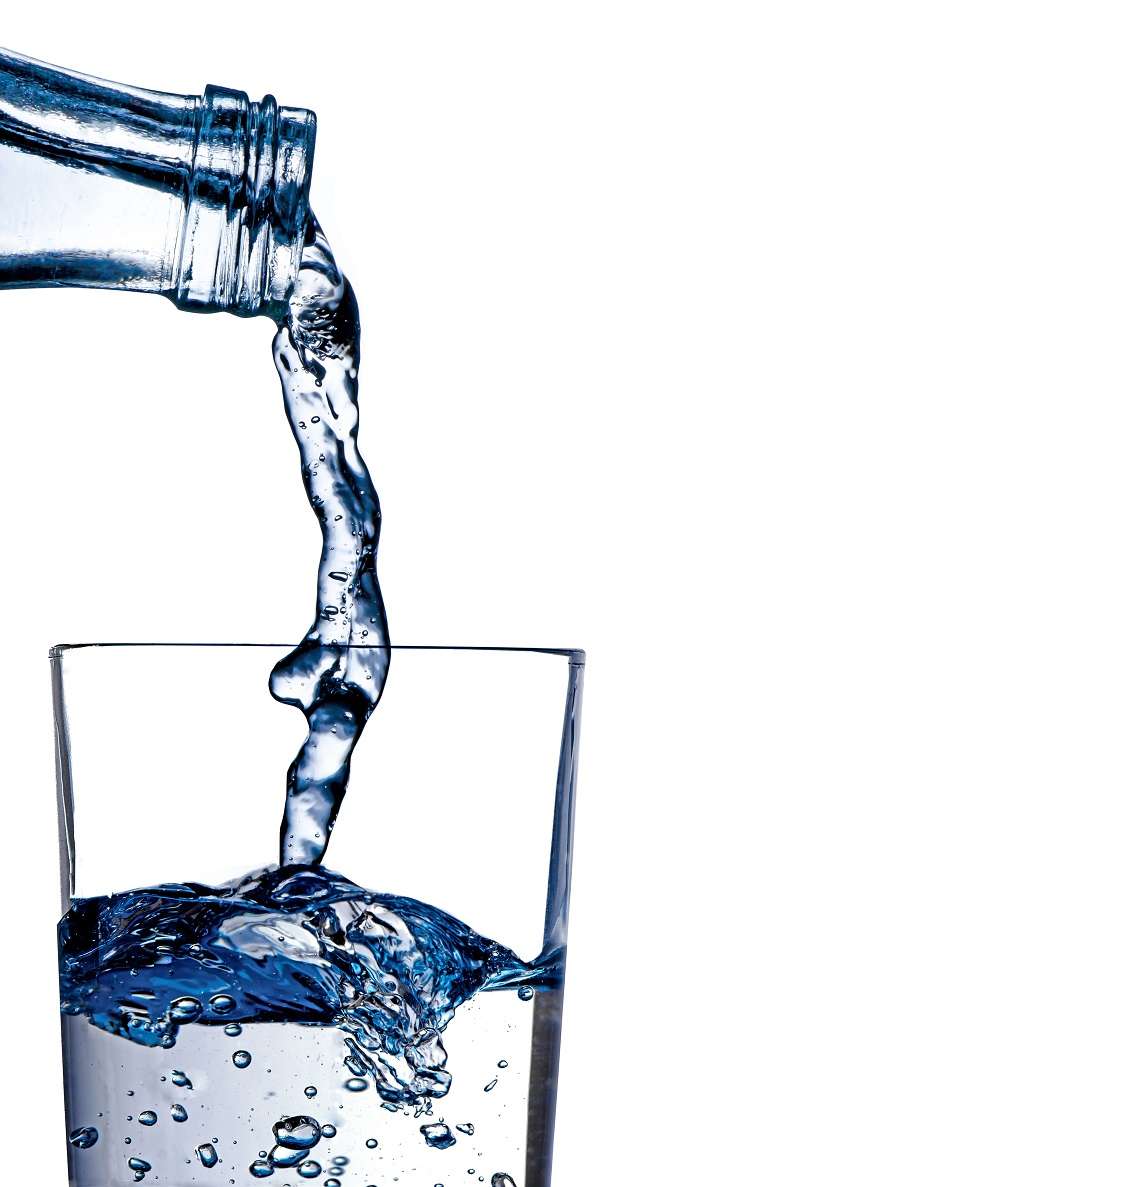 Trinkwasser Probenehmer